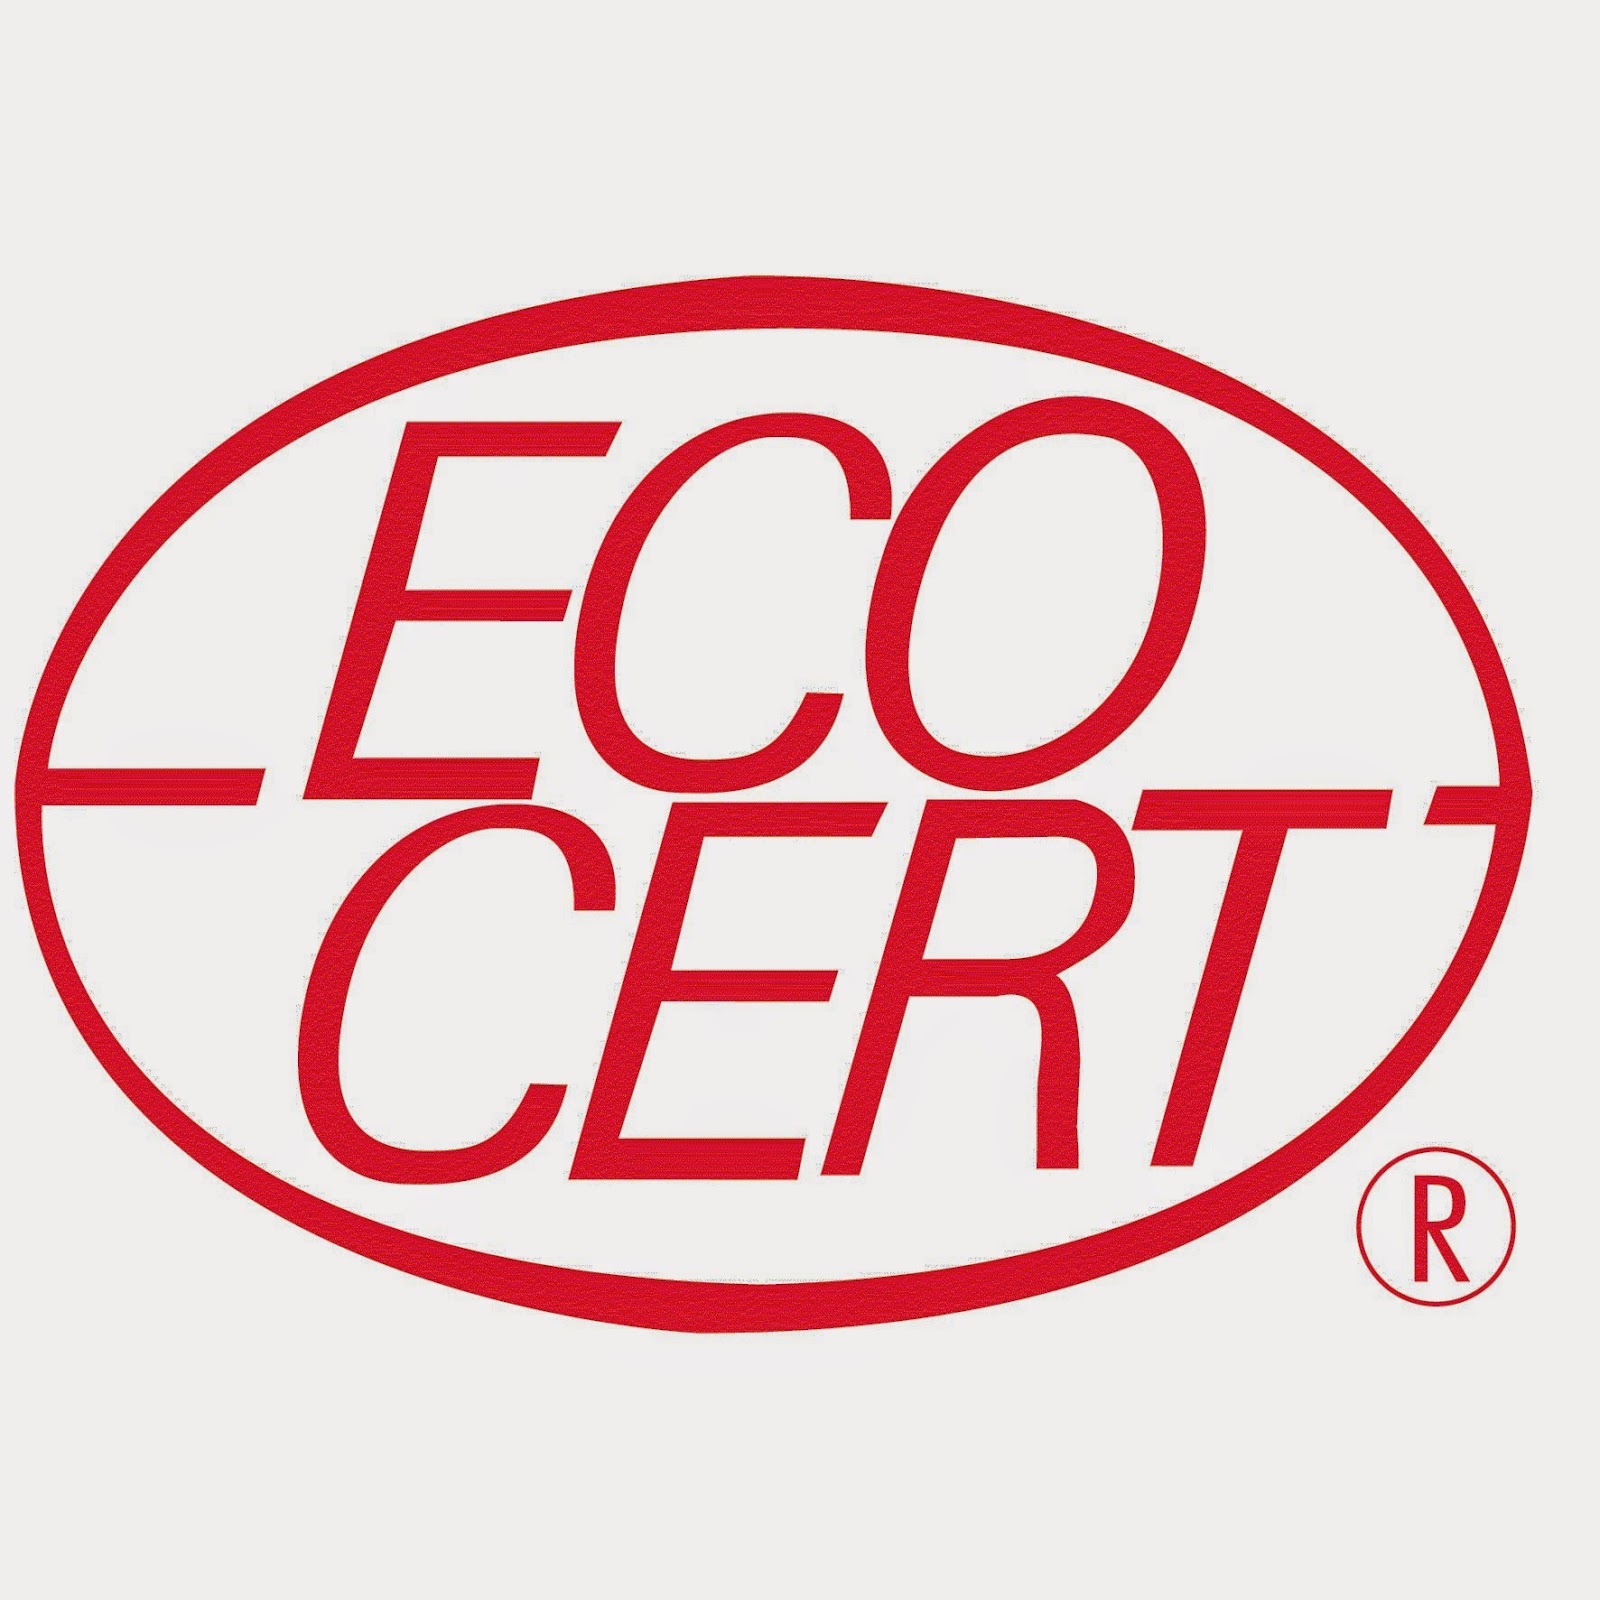 Certification body part I: Ecocert